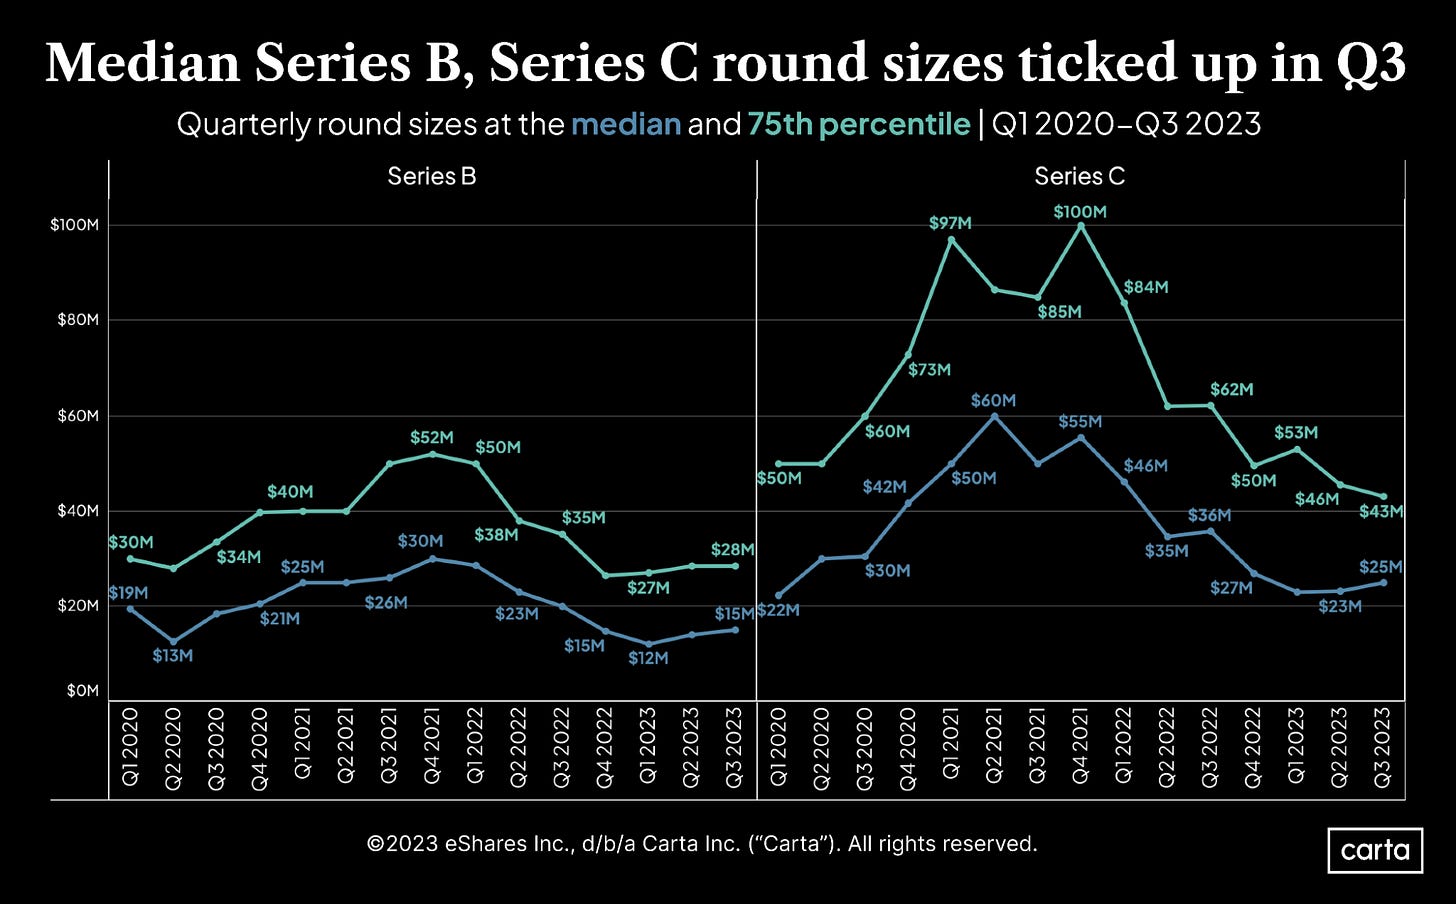 Q3 2023 round sizes: Series B and Series C